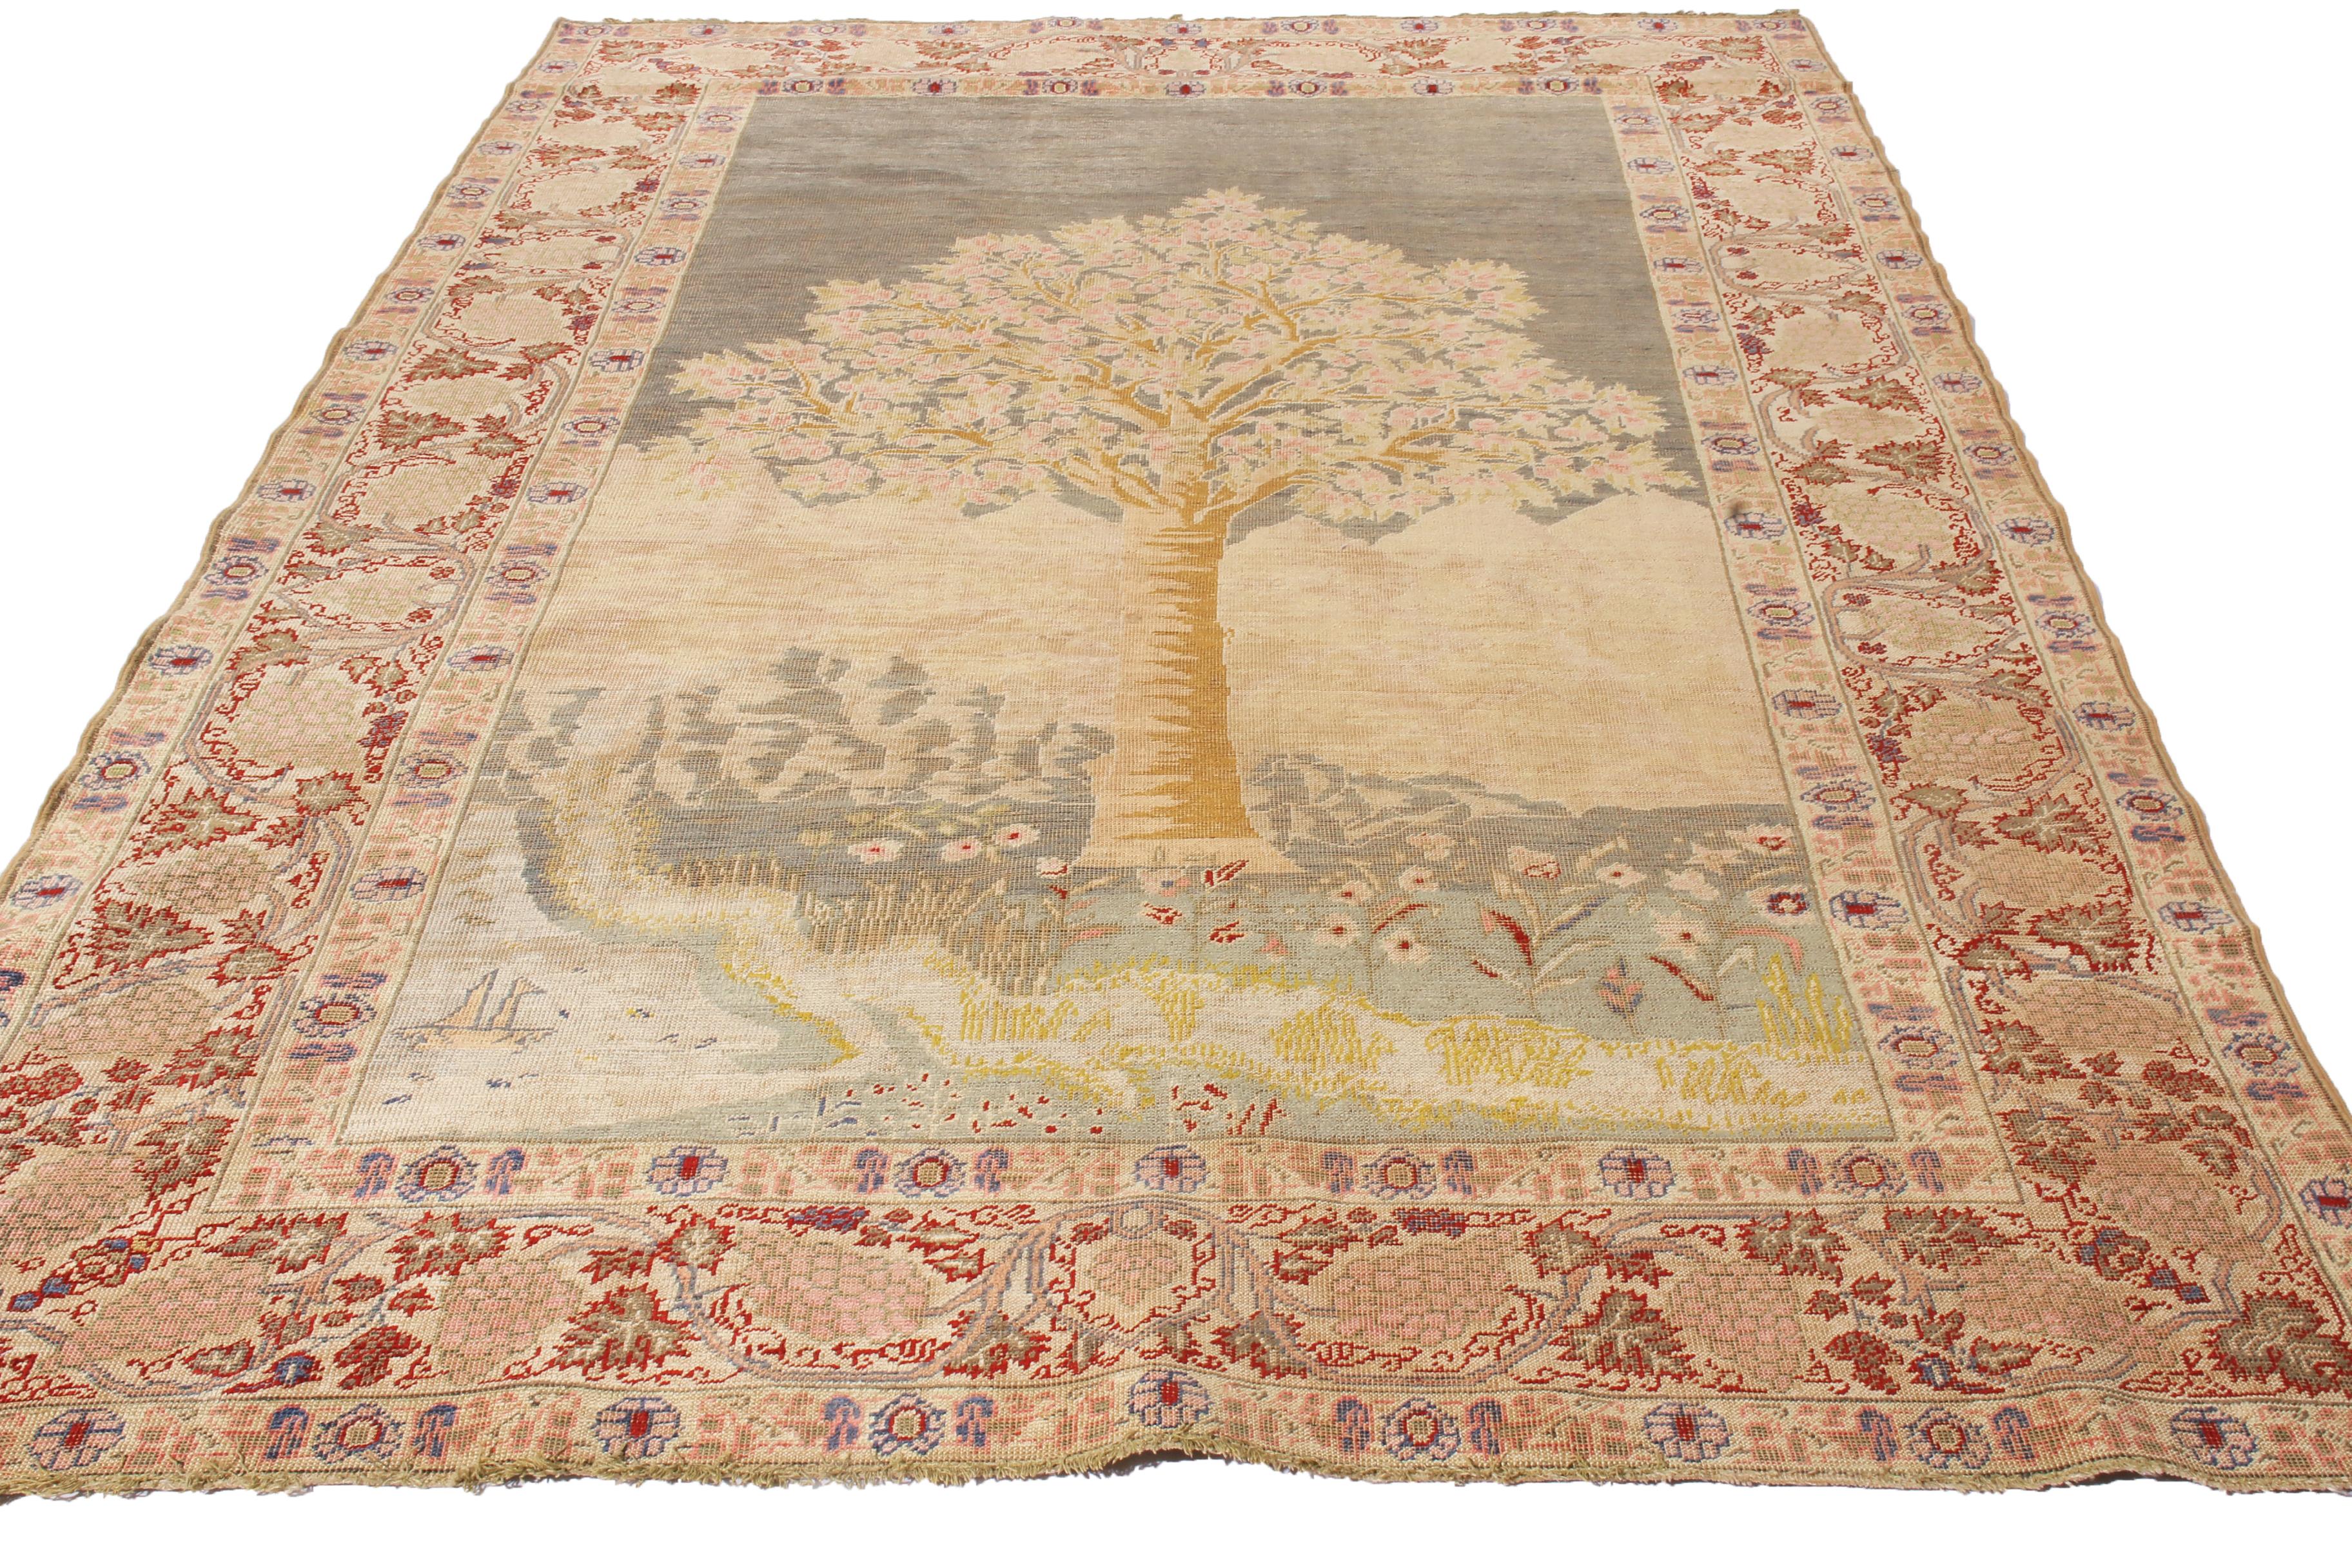 Dieser antike Kayseri-Teppich stammt aus der Türkei aus dem Jahr 1910 und zeichnet sich durch ein realistisches, einseitiges Feldmuster mit einer Vielzahl von floralen Mustern in den gespiegelten Bordüren aus. Der handgeknüpfte Flor aus